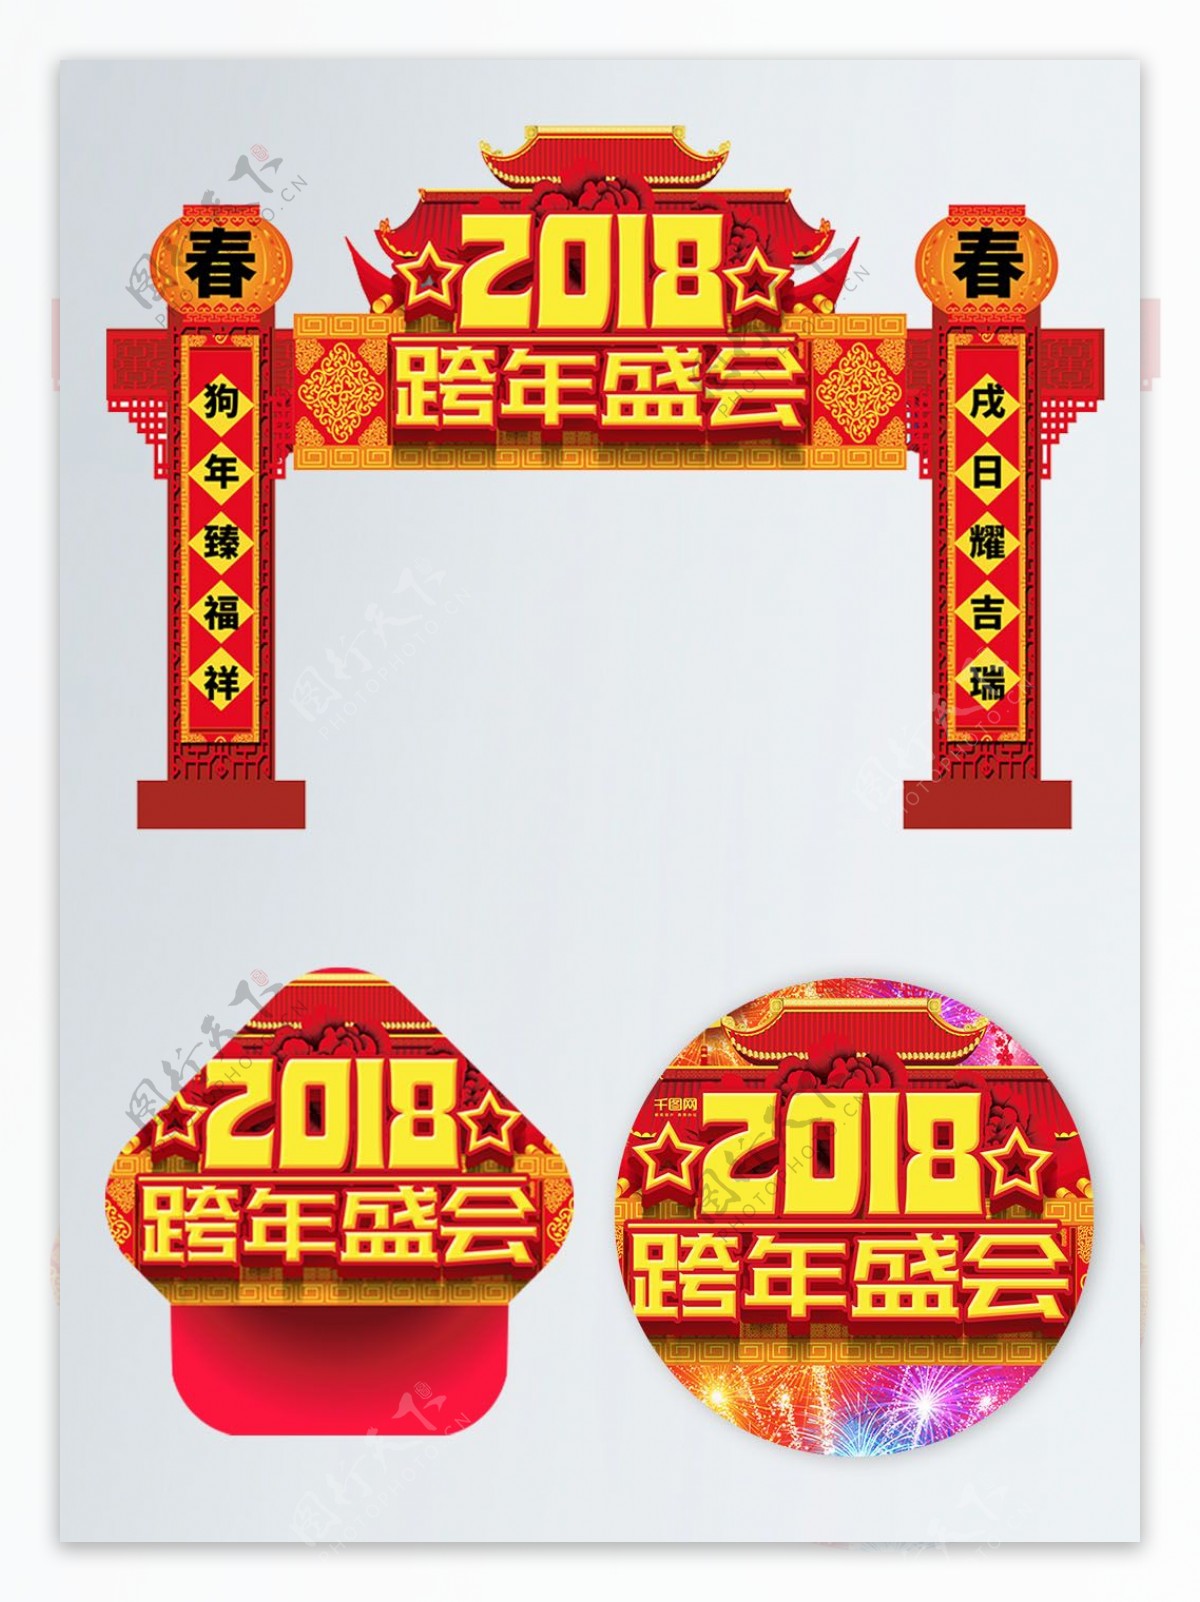 2018跨年盛会红色传统门头布置模板